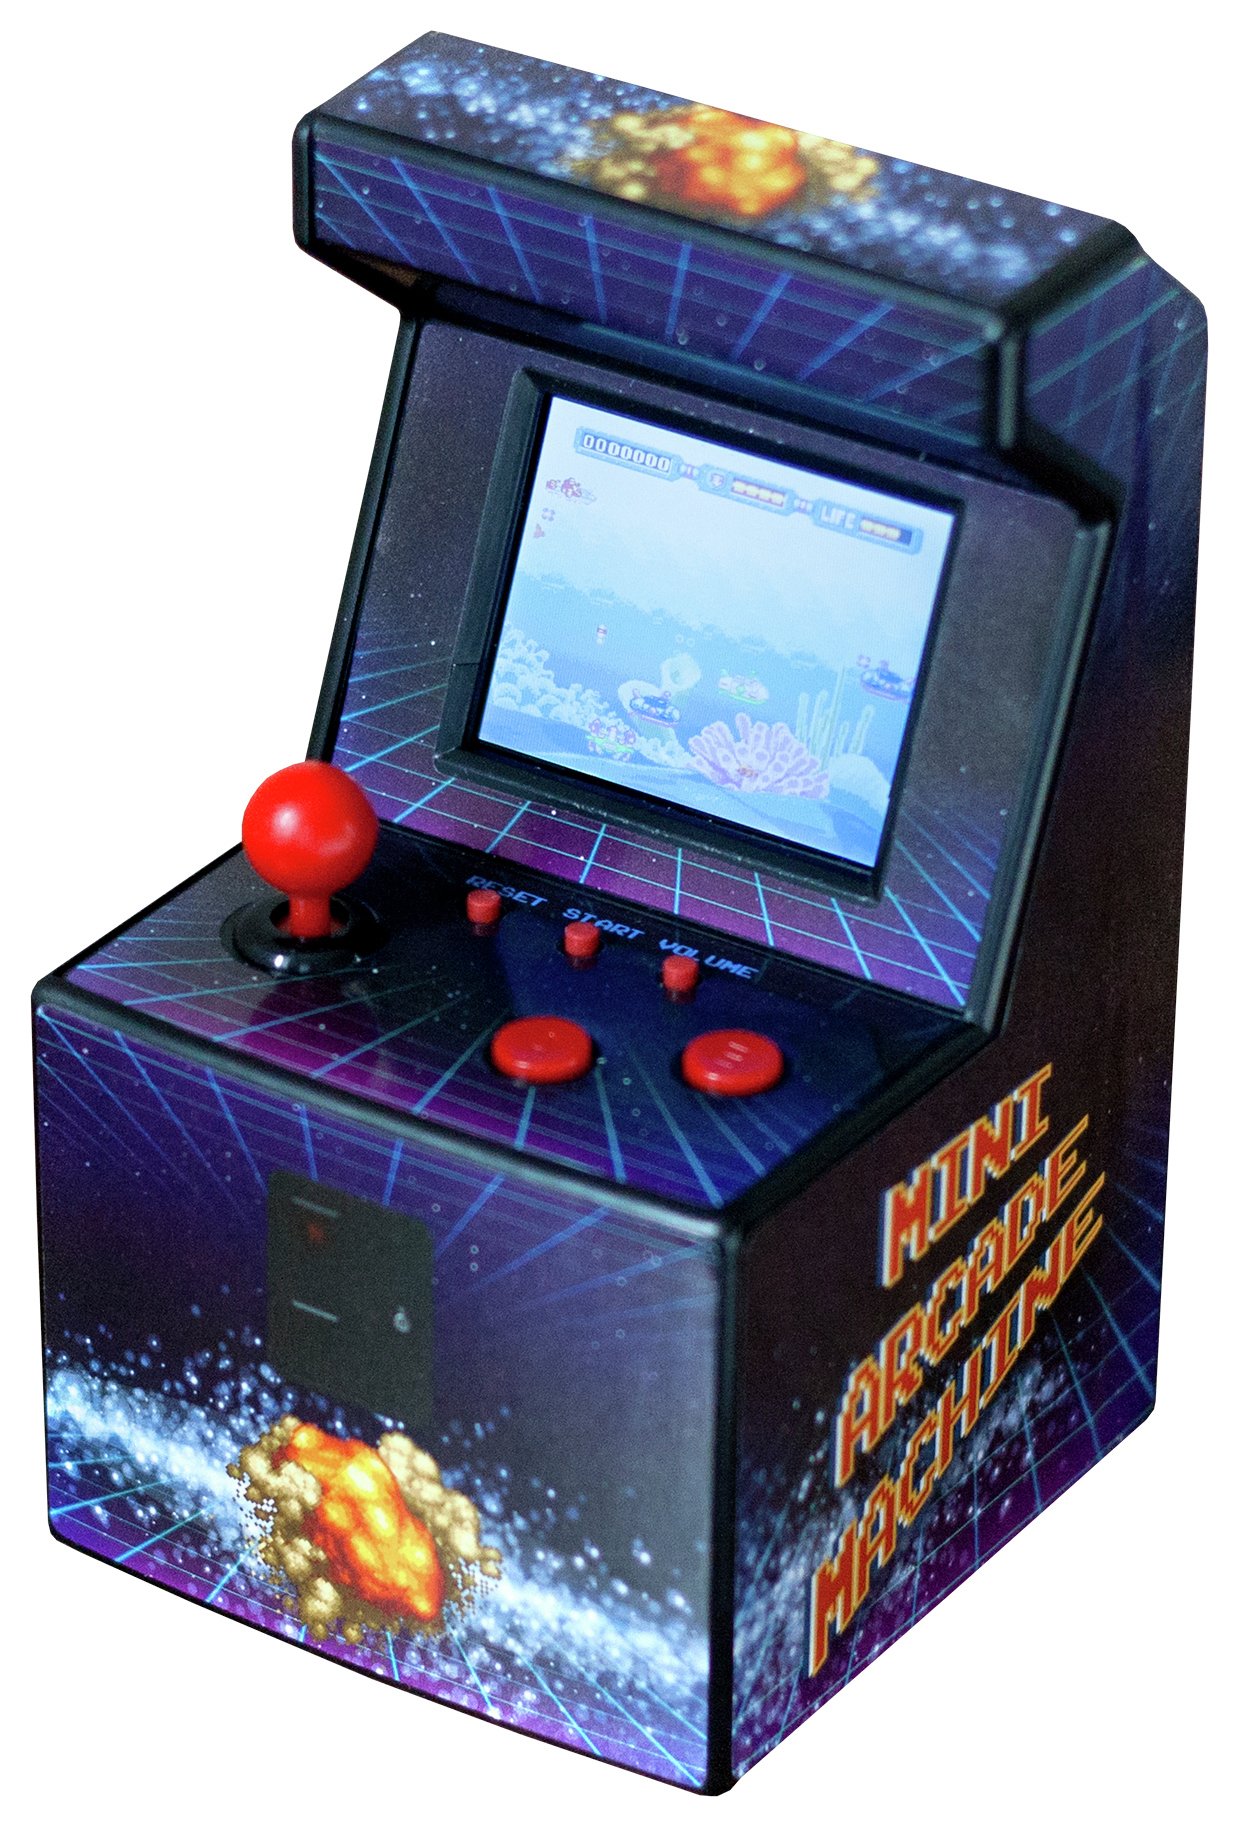 RED5 Desktop Arcade Machine